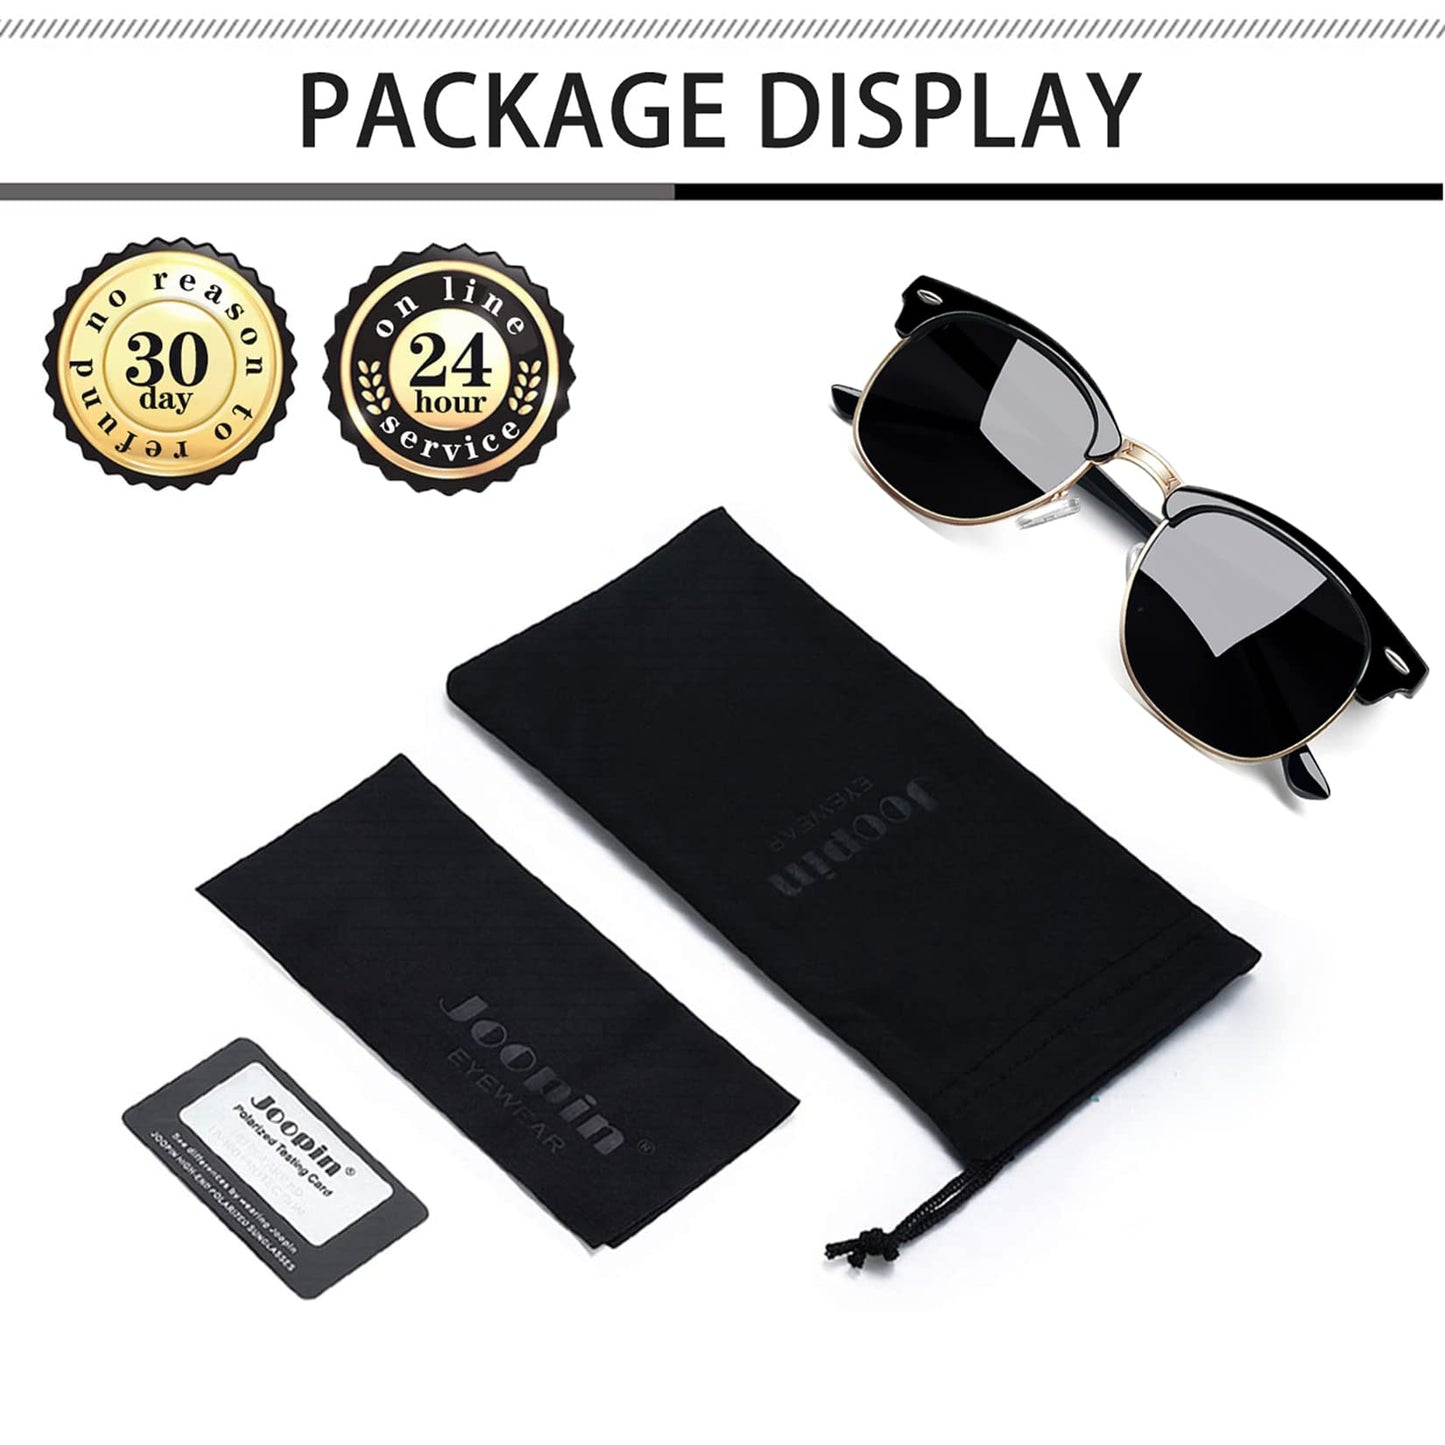 Joopin Semi Rimless Sunglasses Horn Rimmed Sun Glasses Polarized UV400 Half Frame Shades for Men Women (Black Simple Packaging)